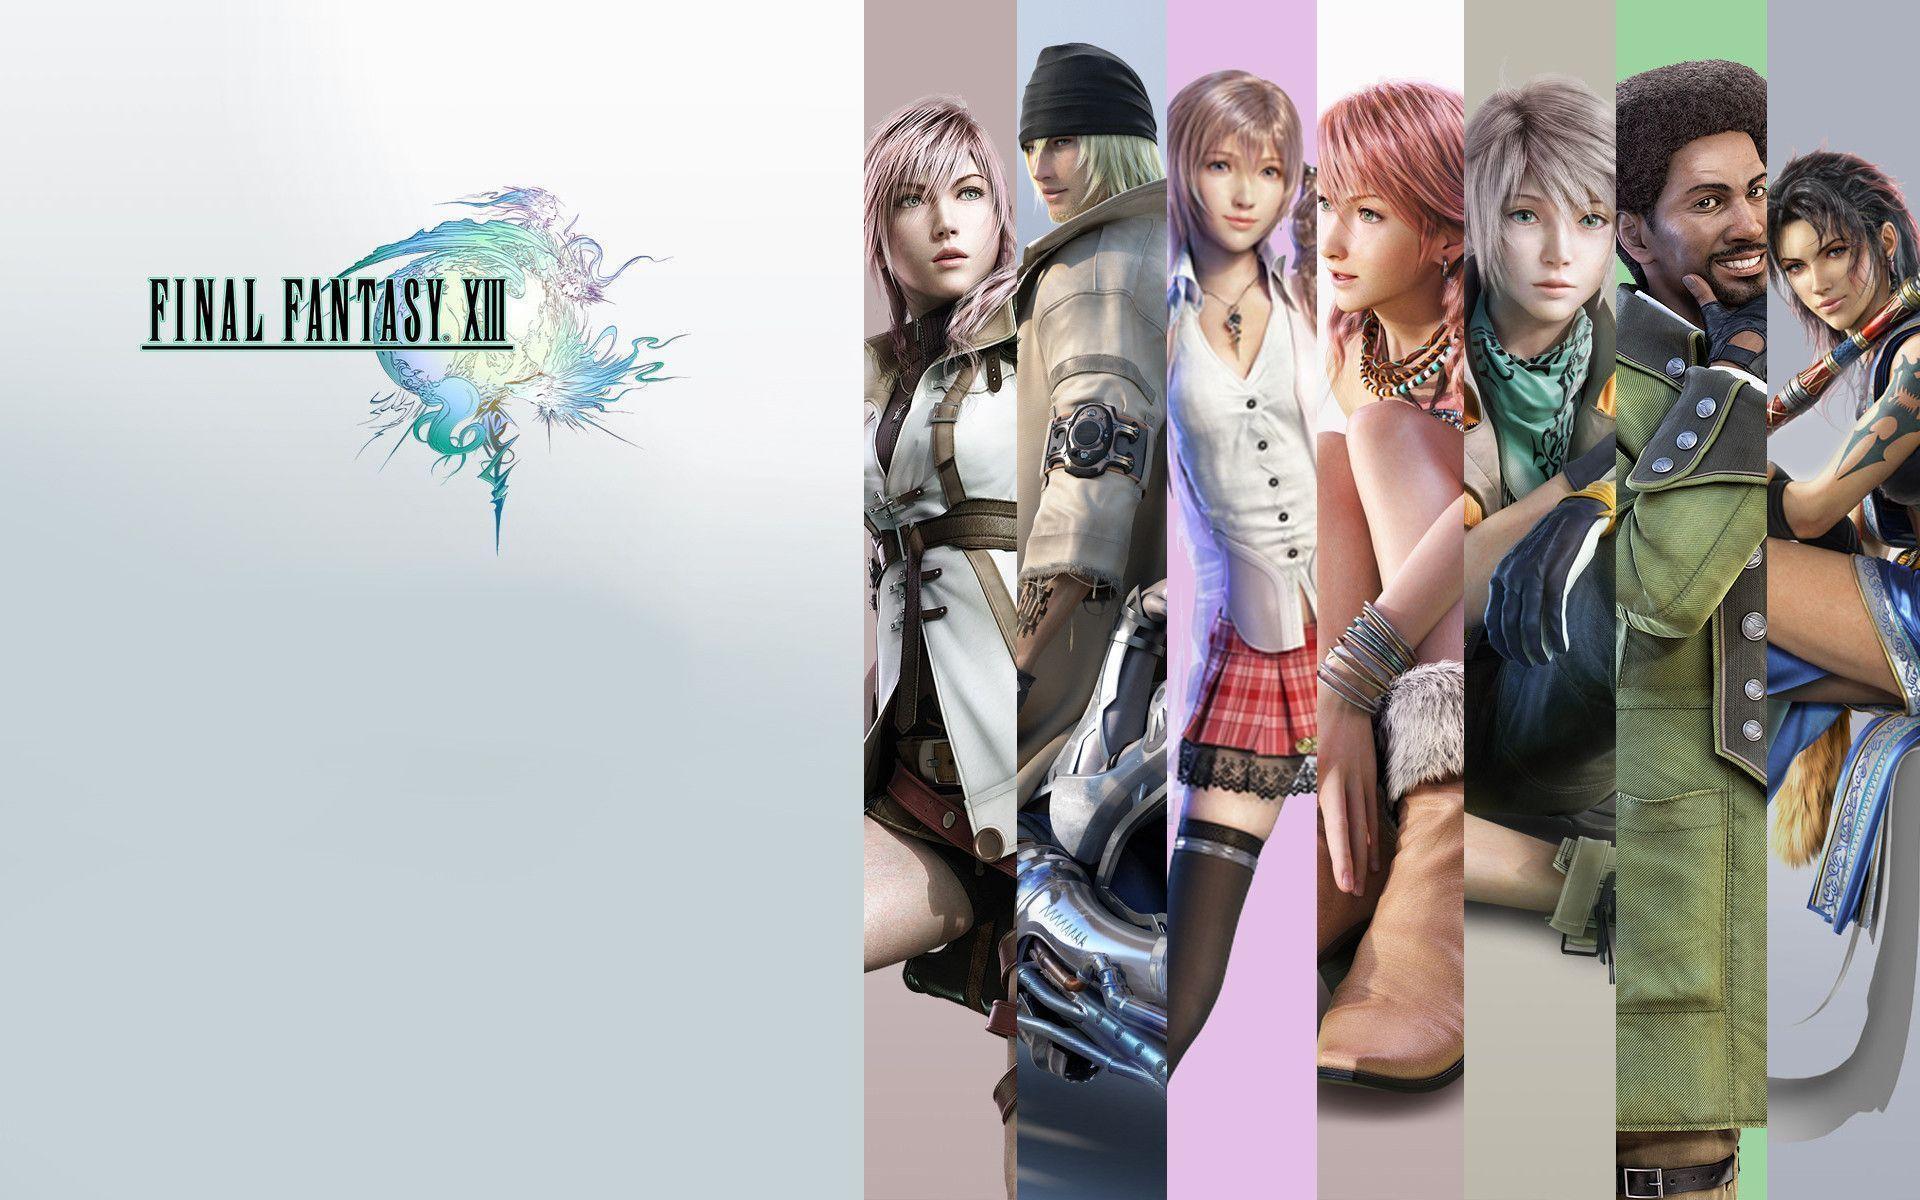 Final Fantasy Versus Xiii Wallpaper